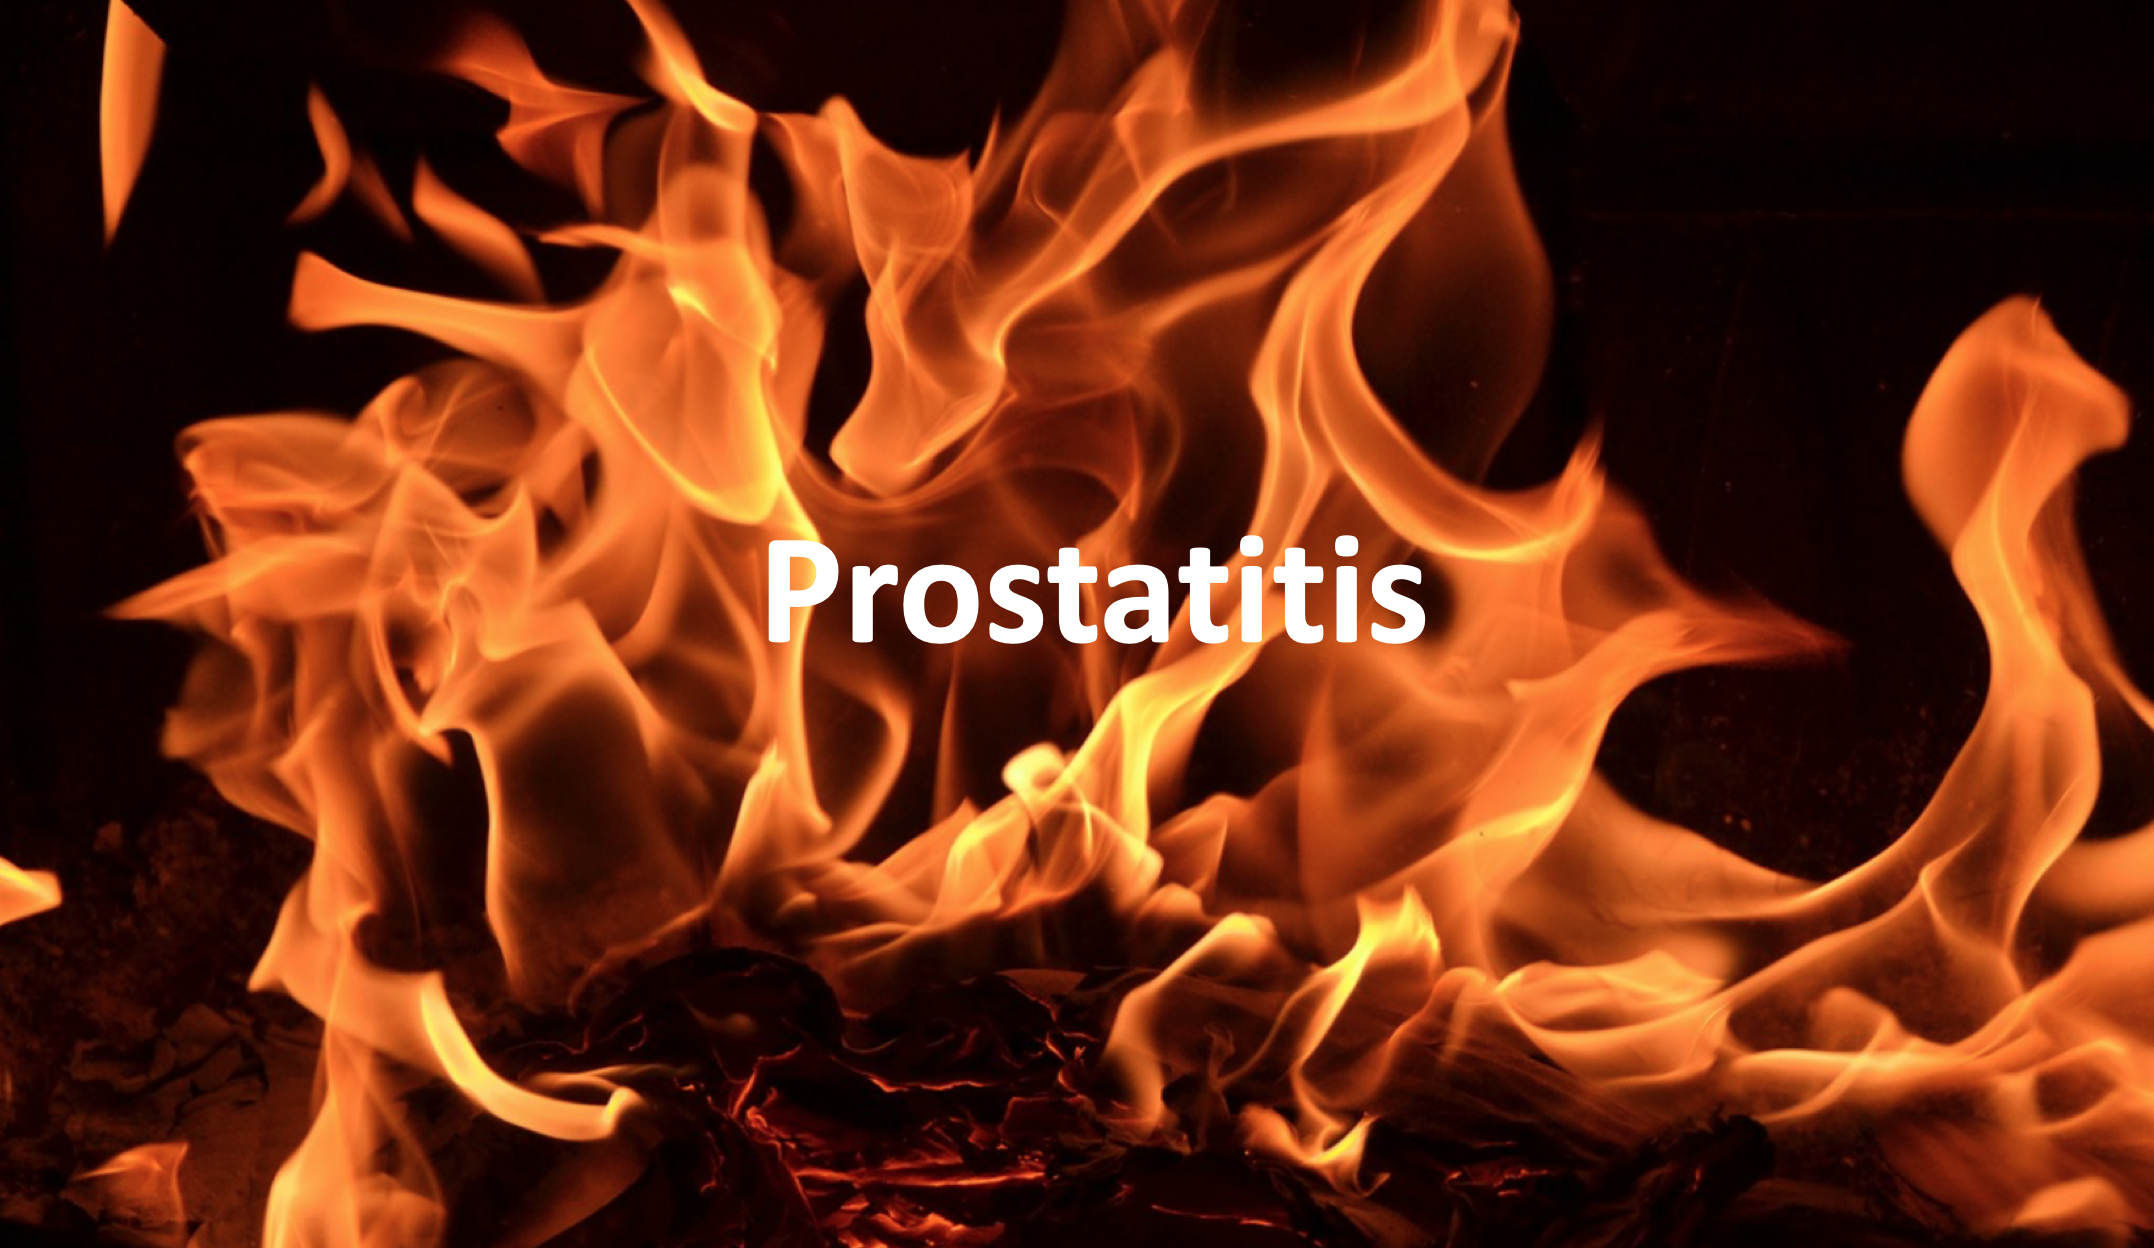 értsd meg a prostatitiset